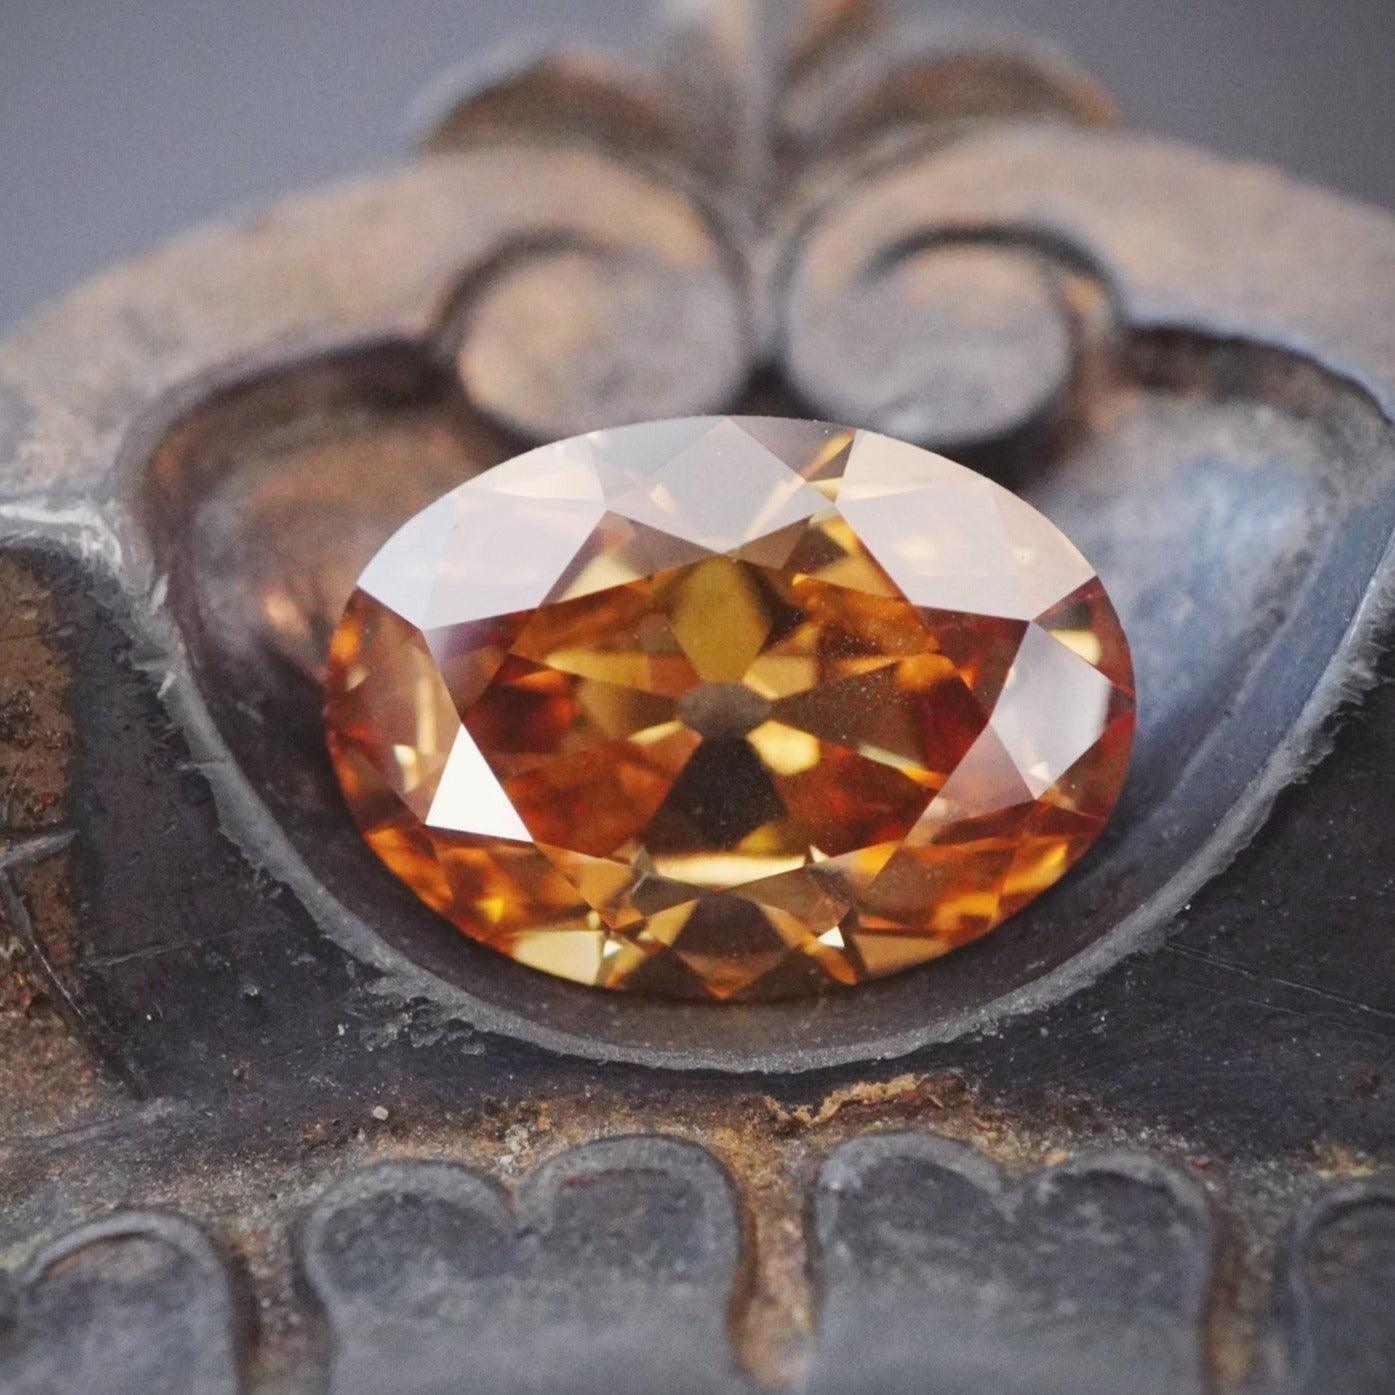 Rare Beauty: 2.10 Carat Oval Colored Diamond - Fancy Deep